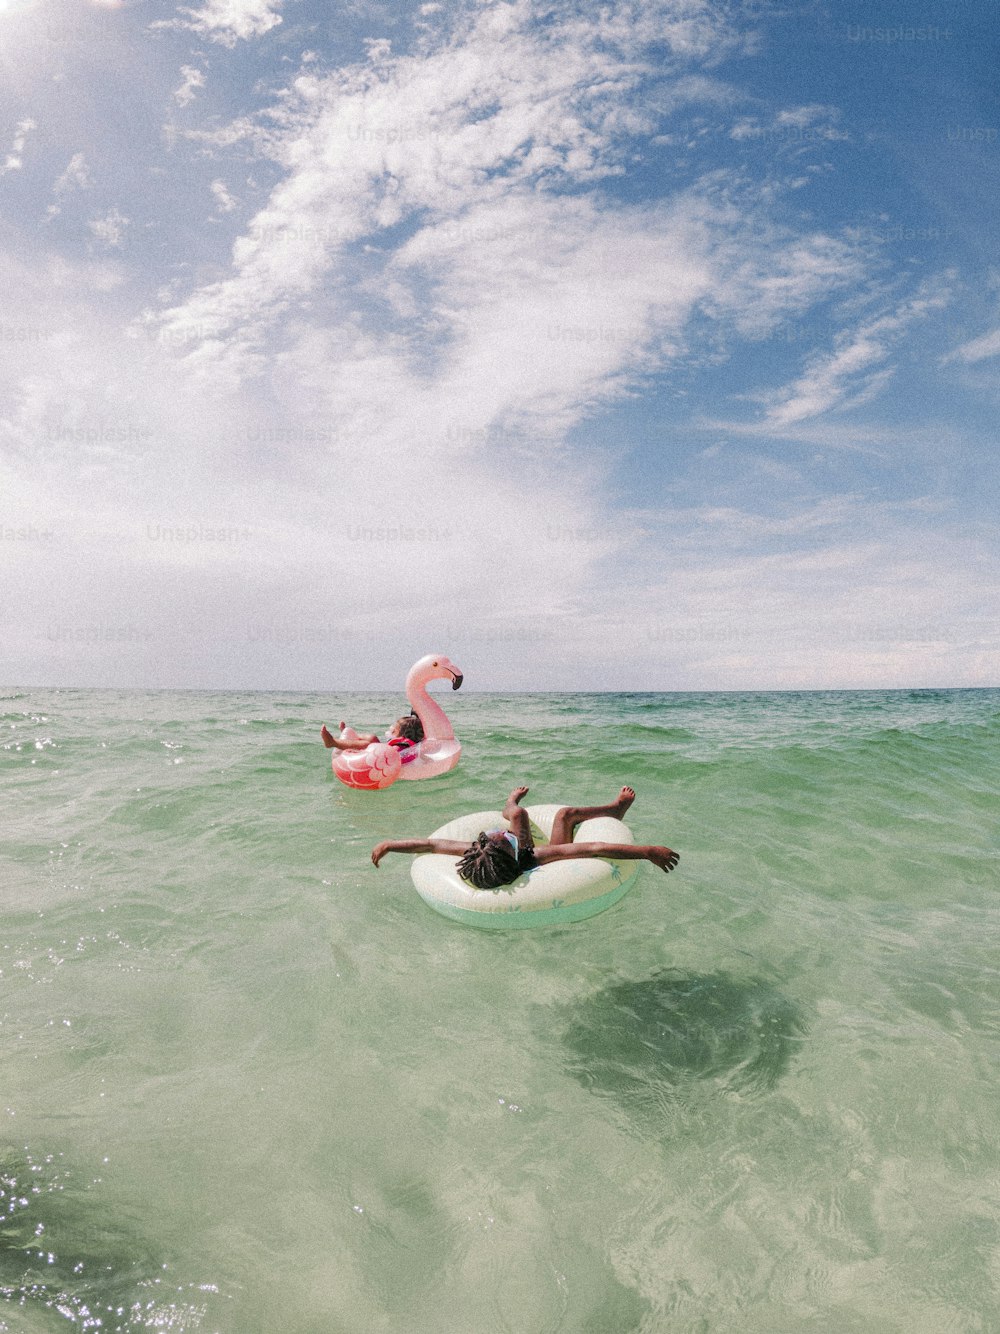 바다에서 서핑보드를 타고 누워 있는 남자